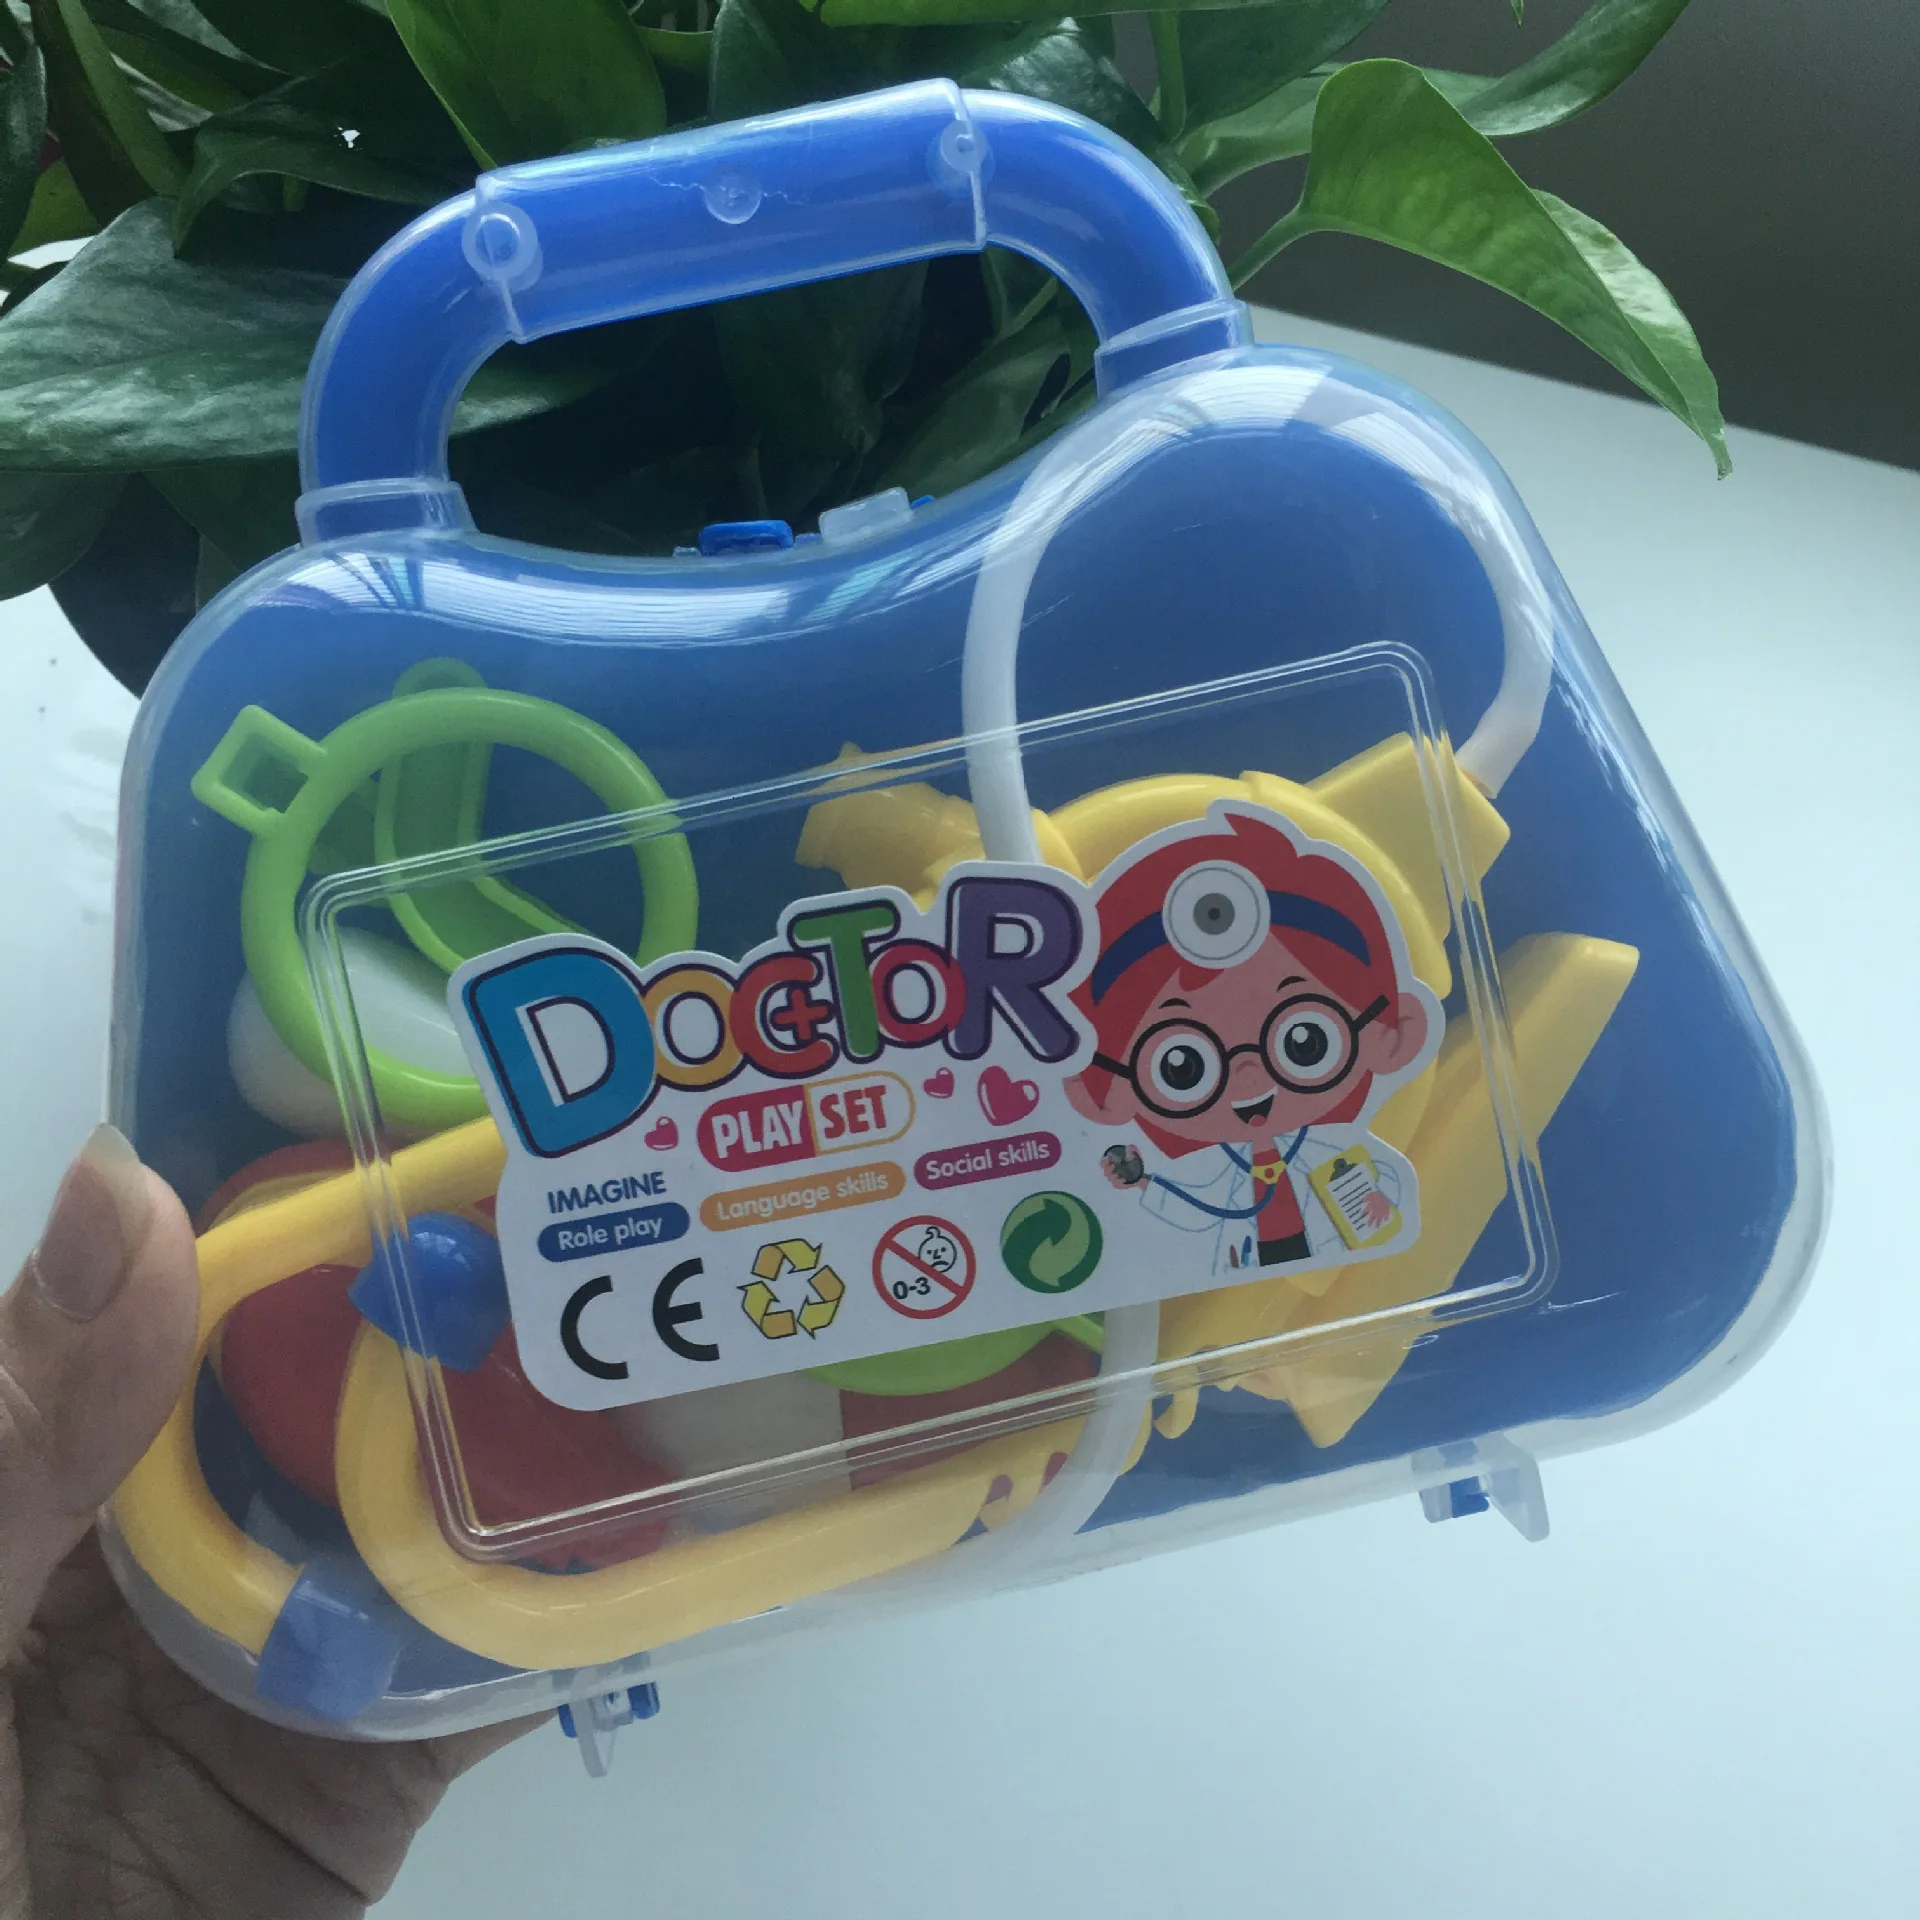 Ребенок играть дома игрушка «Доктор» спецодежда медицинская комплект портативный Коробка Стетоскоп Игрушка. 1 Случайная